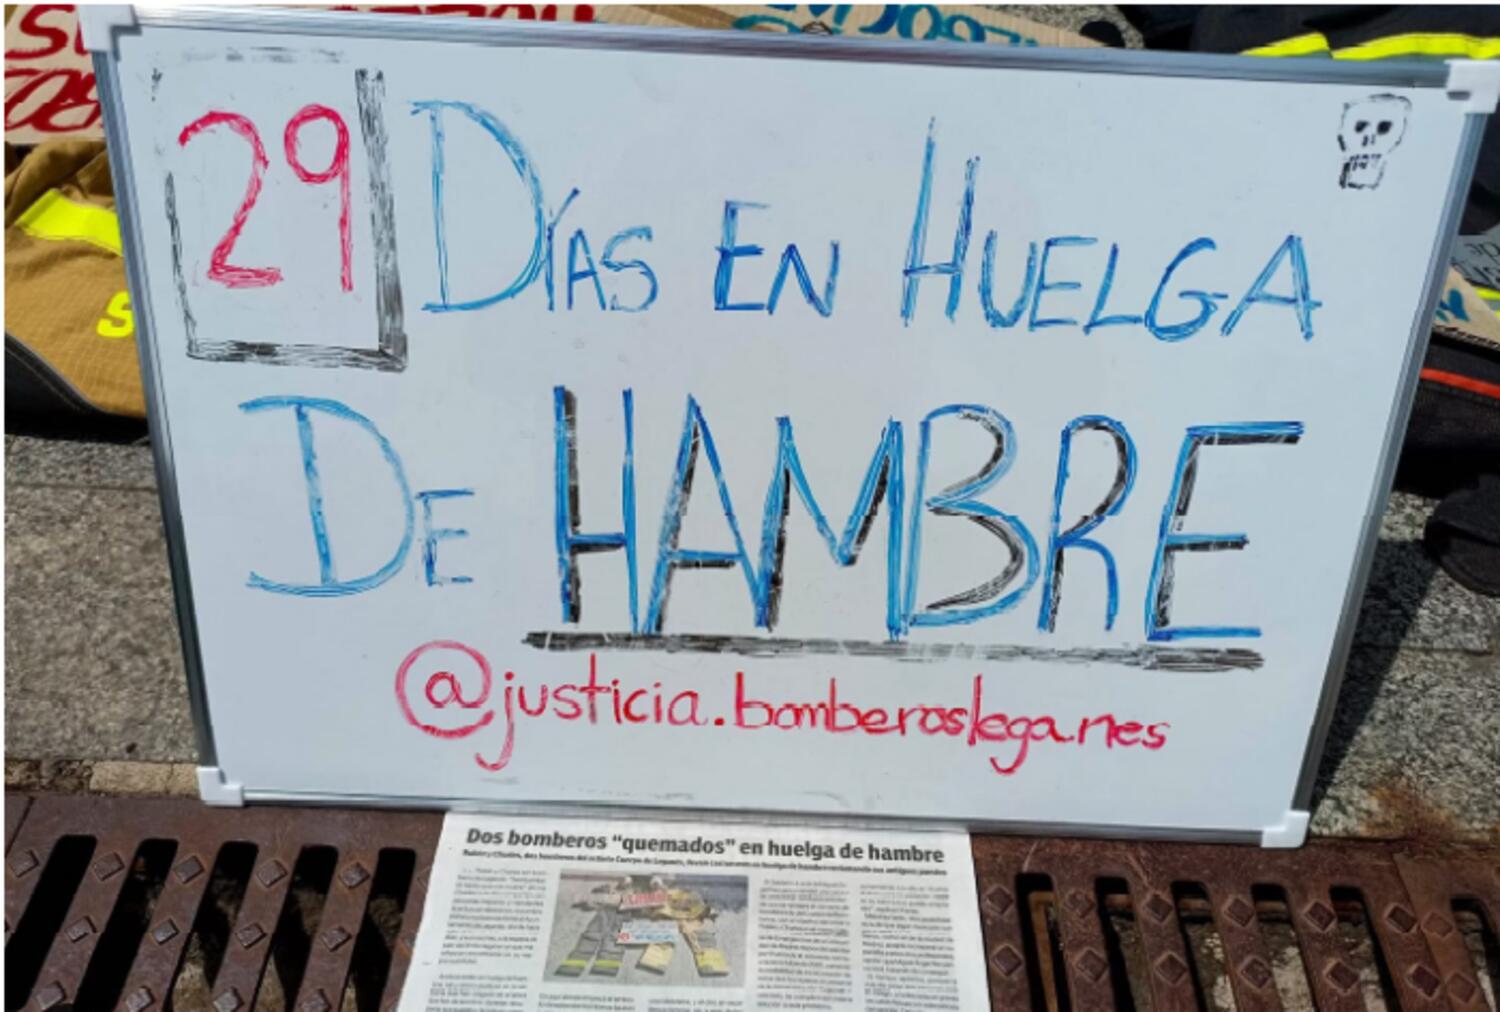 Charles y Rubén llevaban 29 días de huelga de hambre acampados frente al Ayuntamiento de Leganés cuando han decidido poner fin a su protesta. En esta pizarra iban contando los días. Foto IG @justicia.bomberosleganes